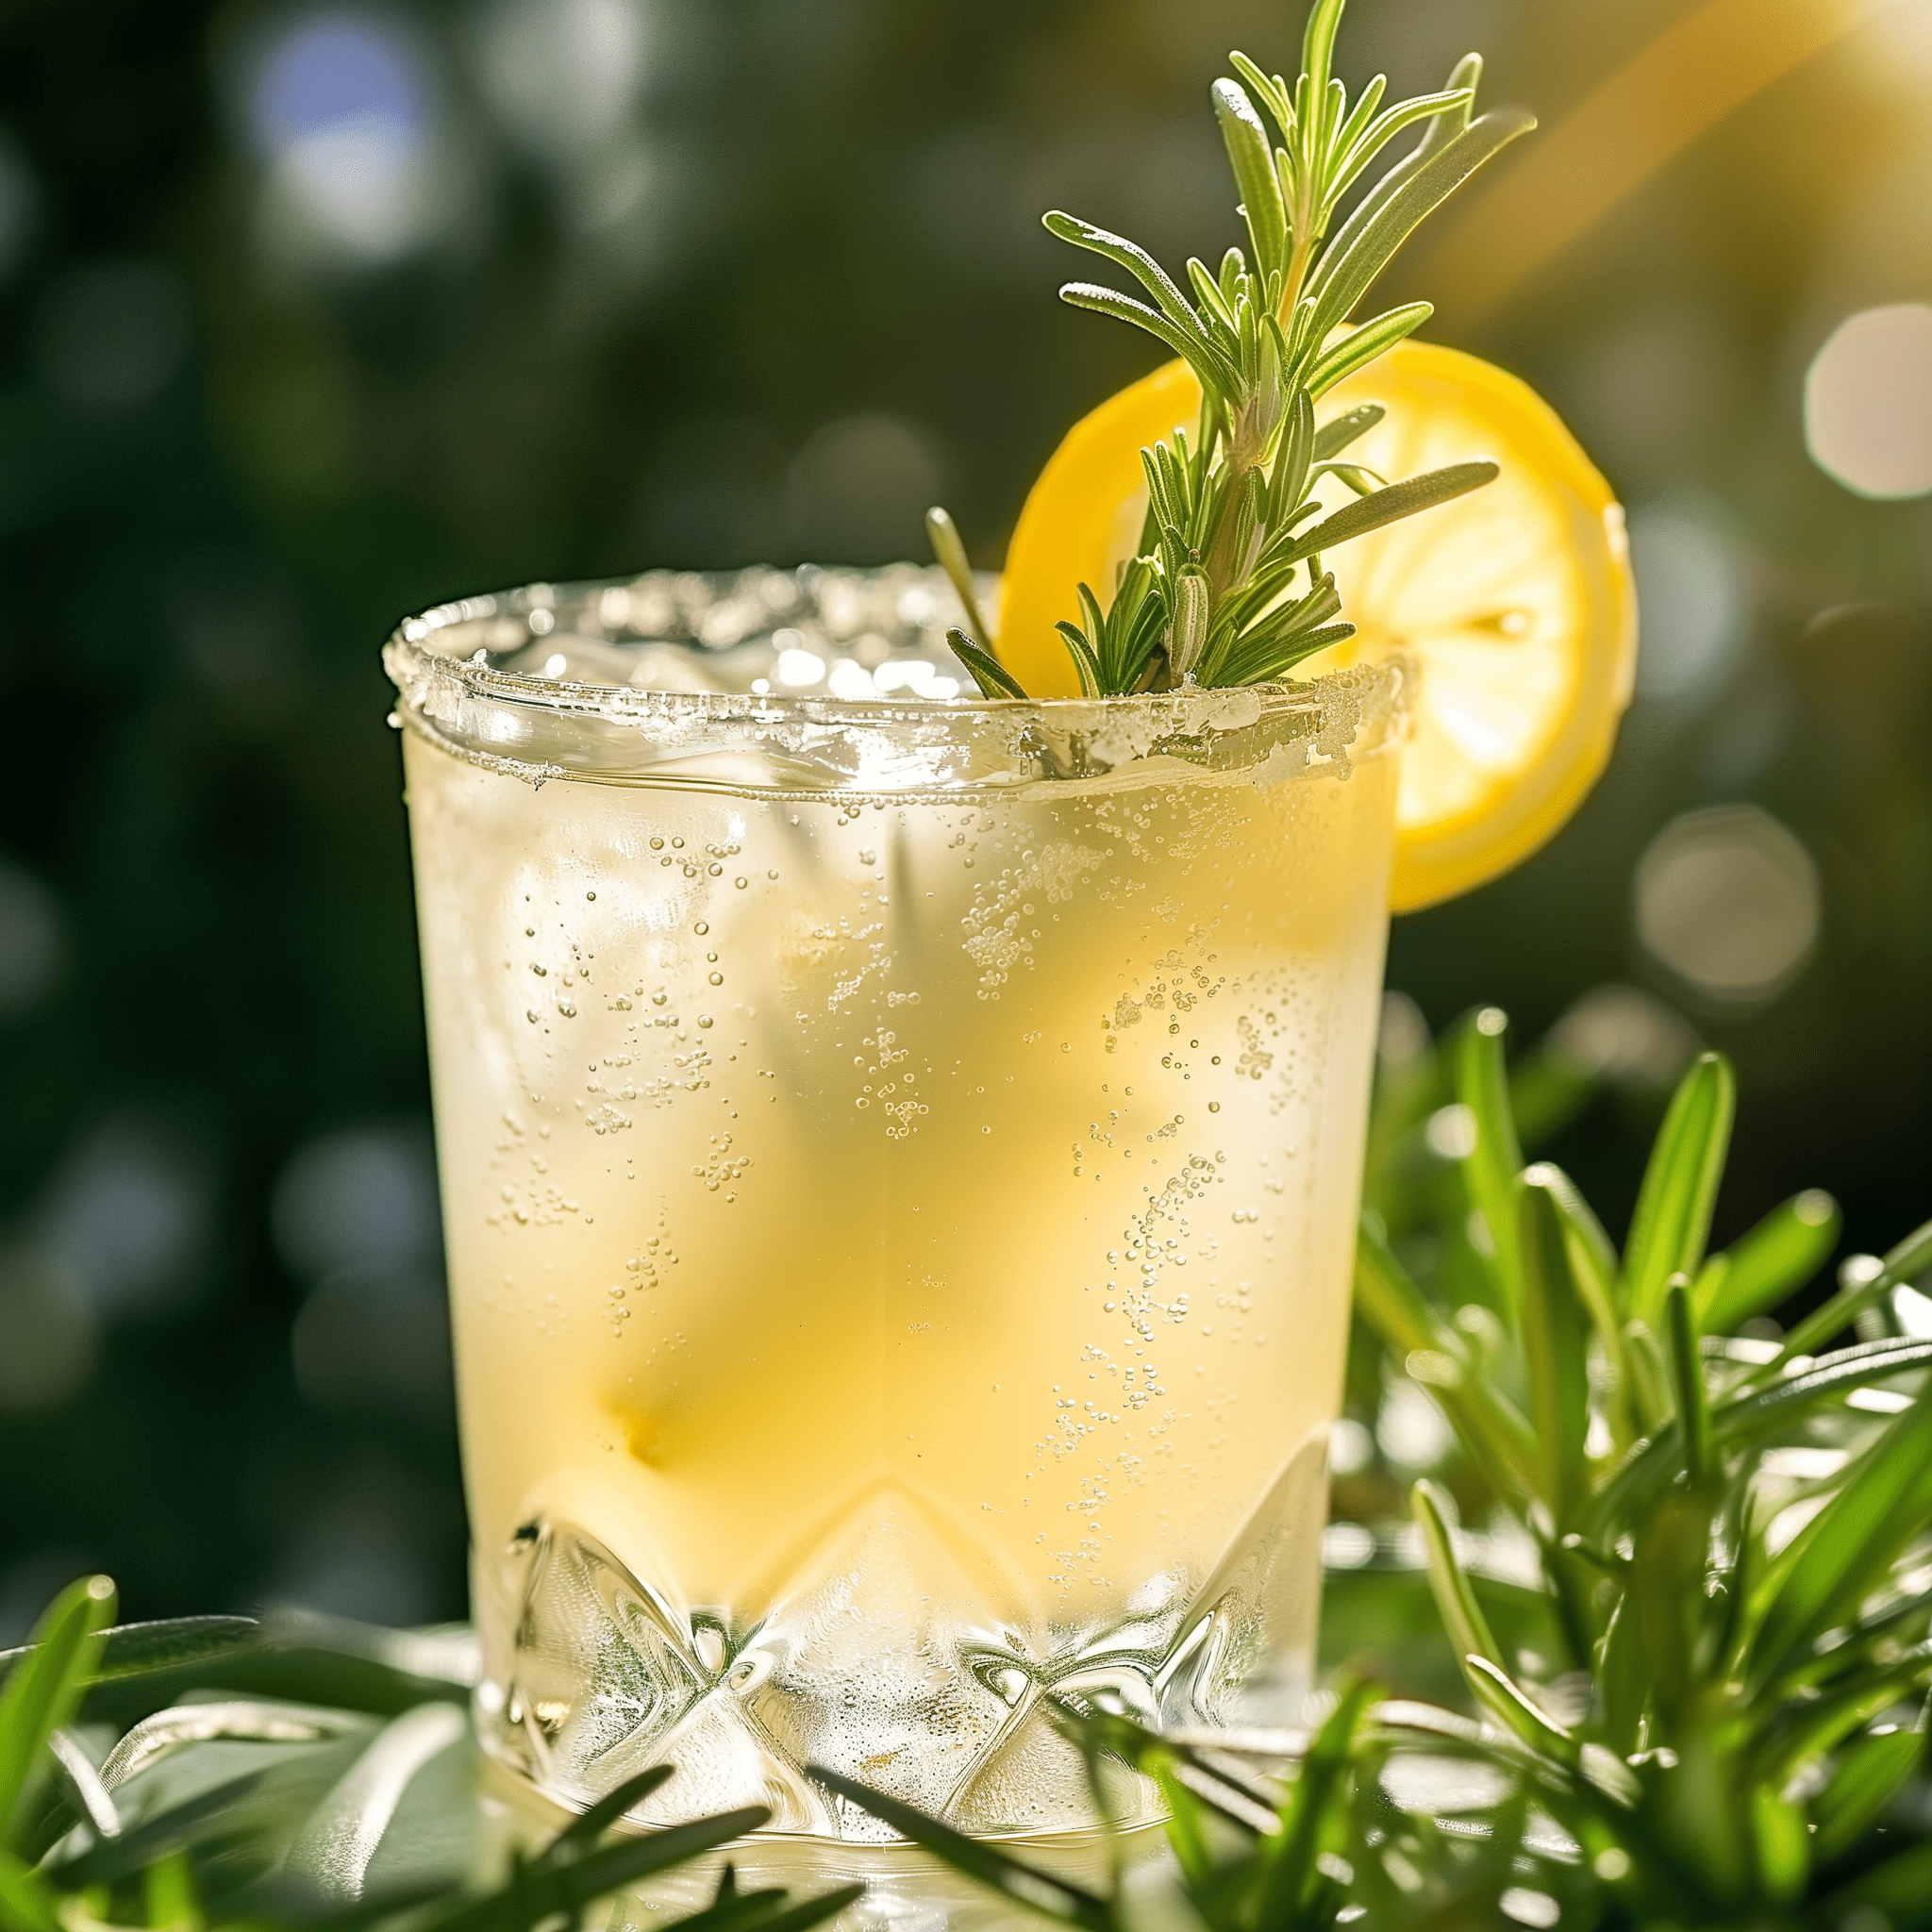 Lemon Refresher Receta - El Lemon Refresher es una mezcla armoniosa de ácido y dulce, con una ligera efervescencia del agua con gas y un sutil matiz herbal del romero. Es refrescante, picante y tiene un final limpio que deja el paladar vigorizado.